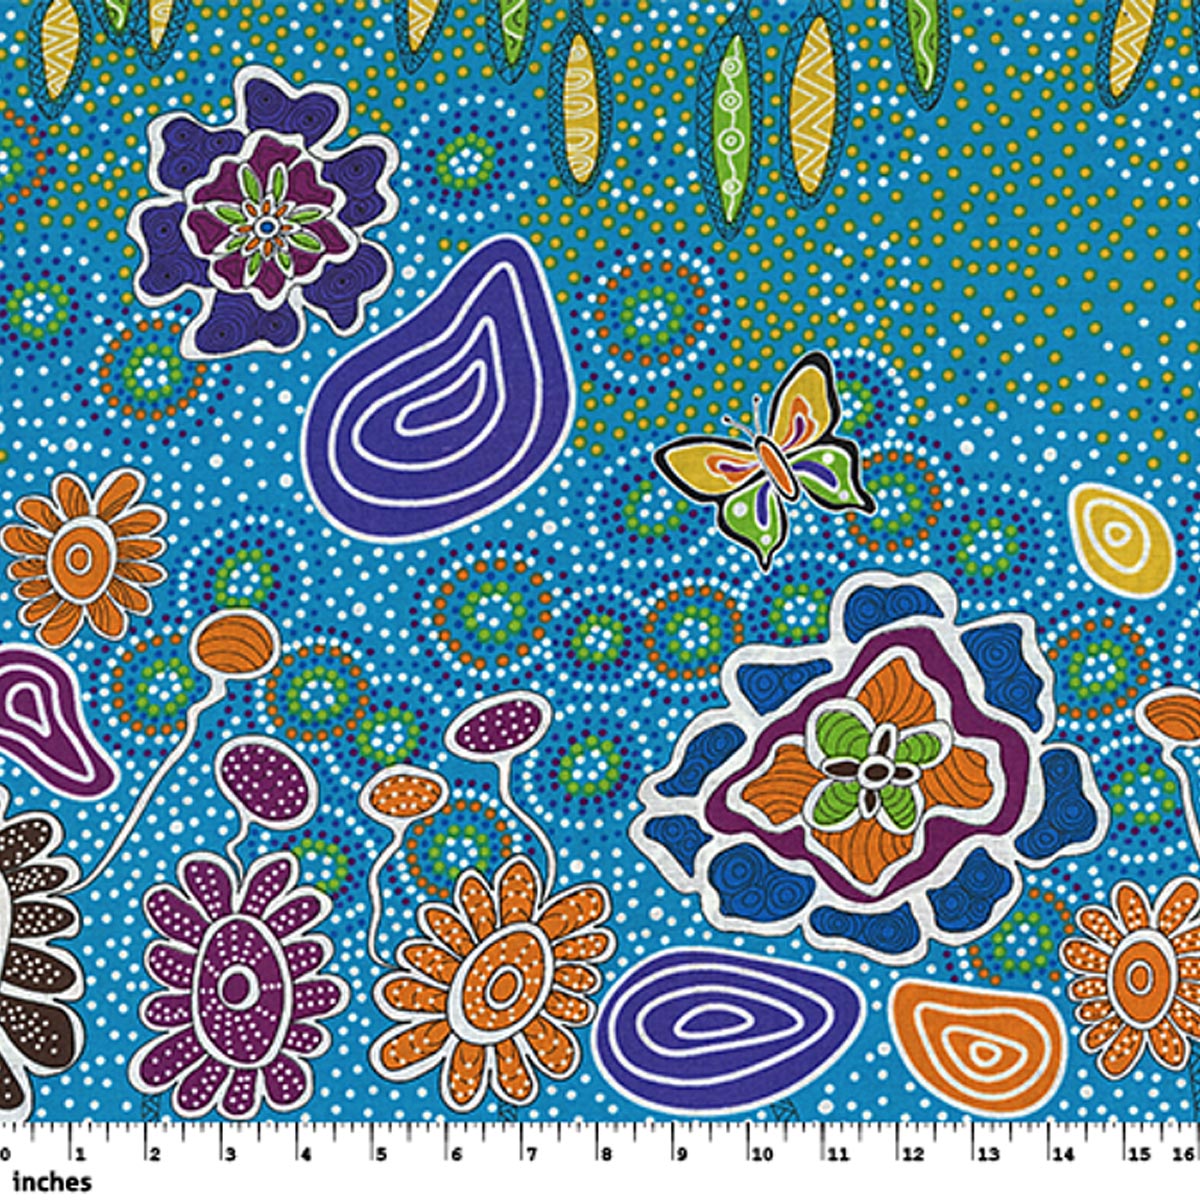 SUMMERTIME RAINFOREST BLUE by Aboriginal Artist HEATHER KENNEDY